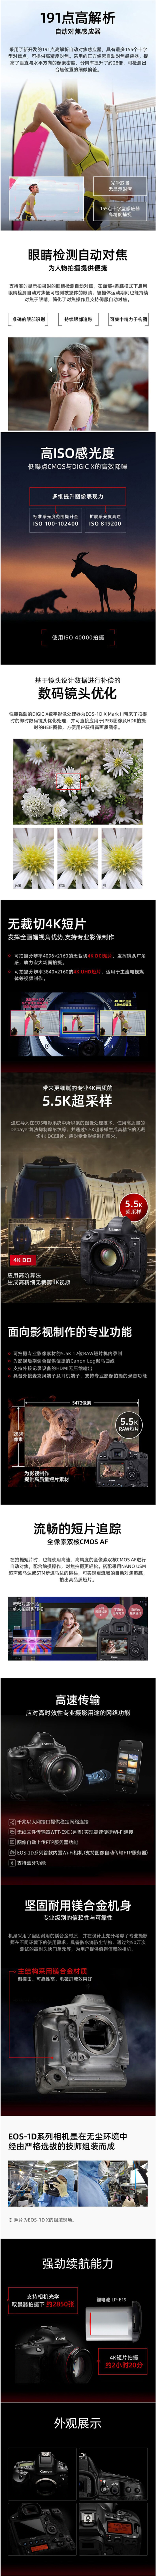 FireShot Capture 519 - 【佳能EOS 1D X Mark III】佳能（Canon）EOS 1D X Mark III 机身1DX3全画幅旗舰级单反相机【行情 报_ - item.jd.com.png